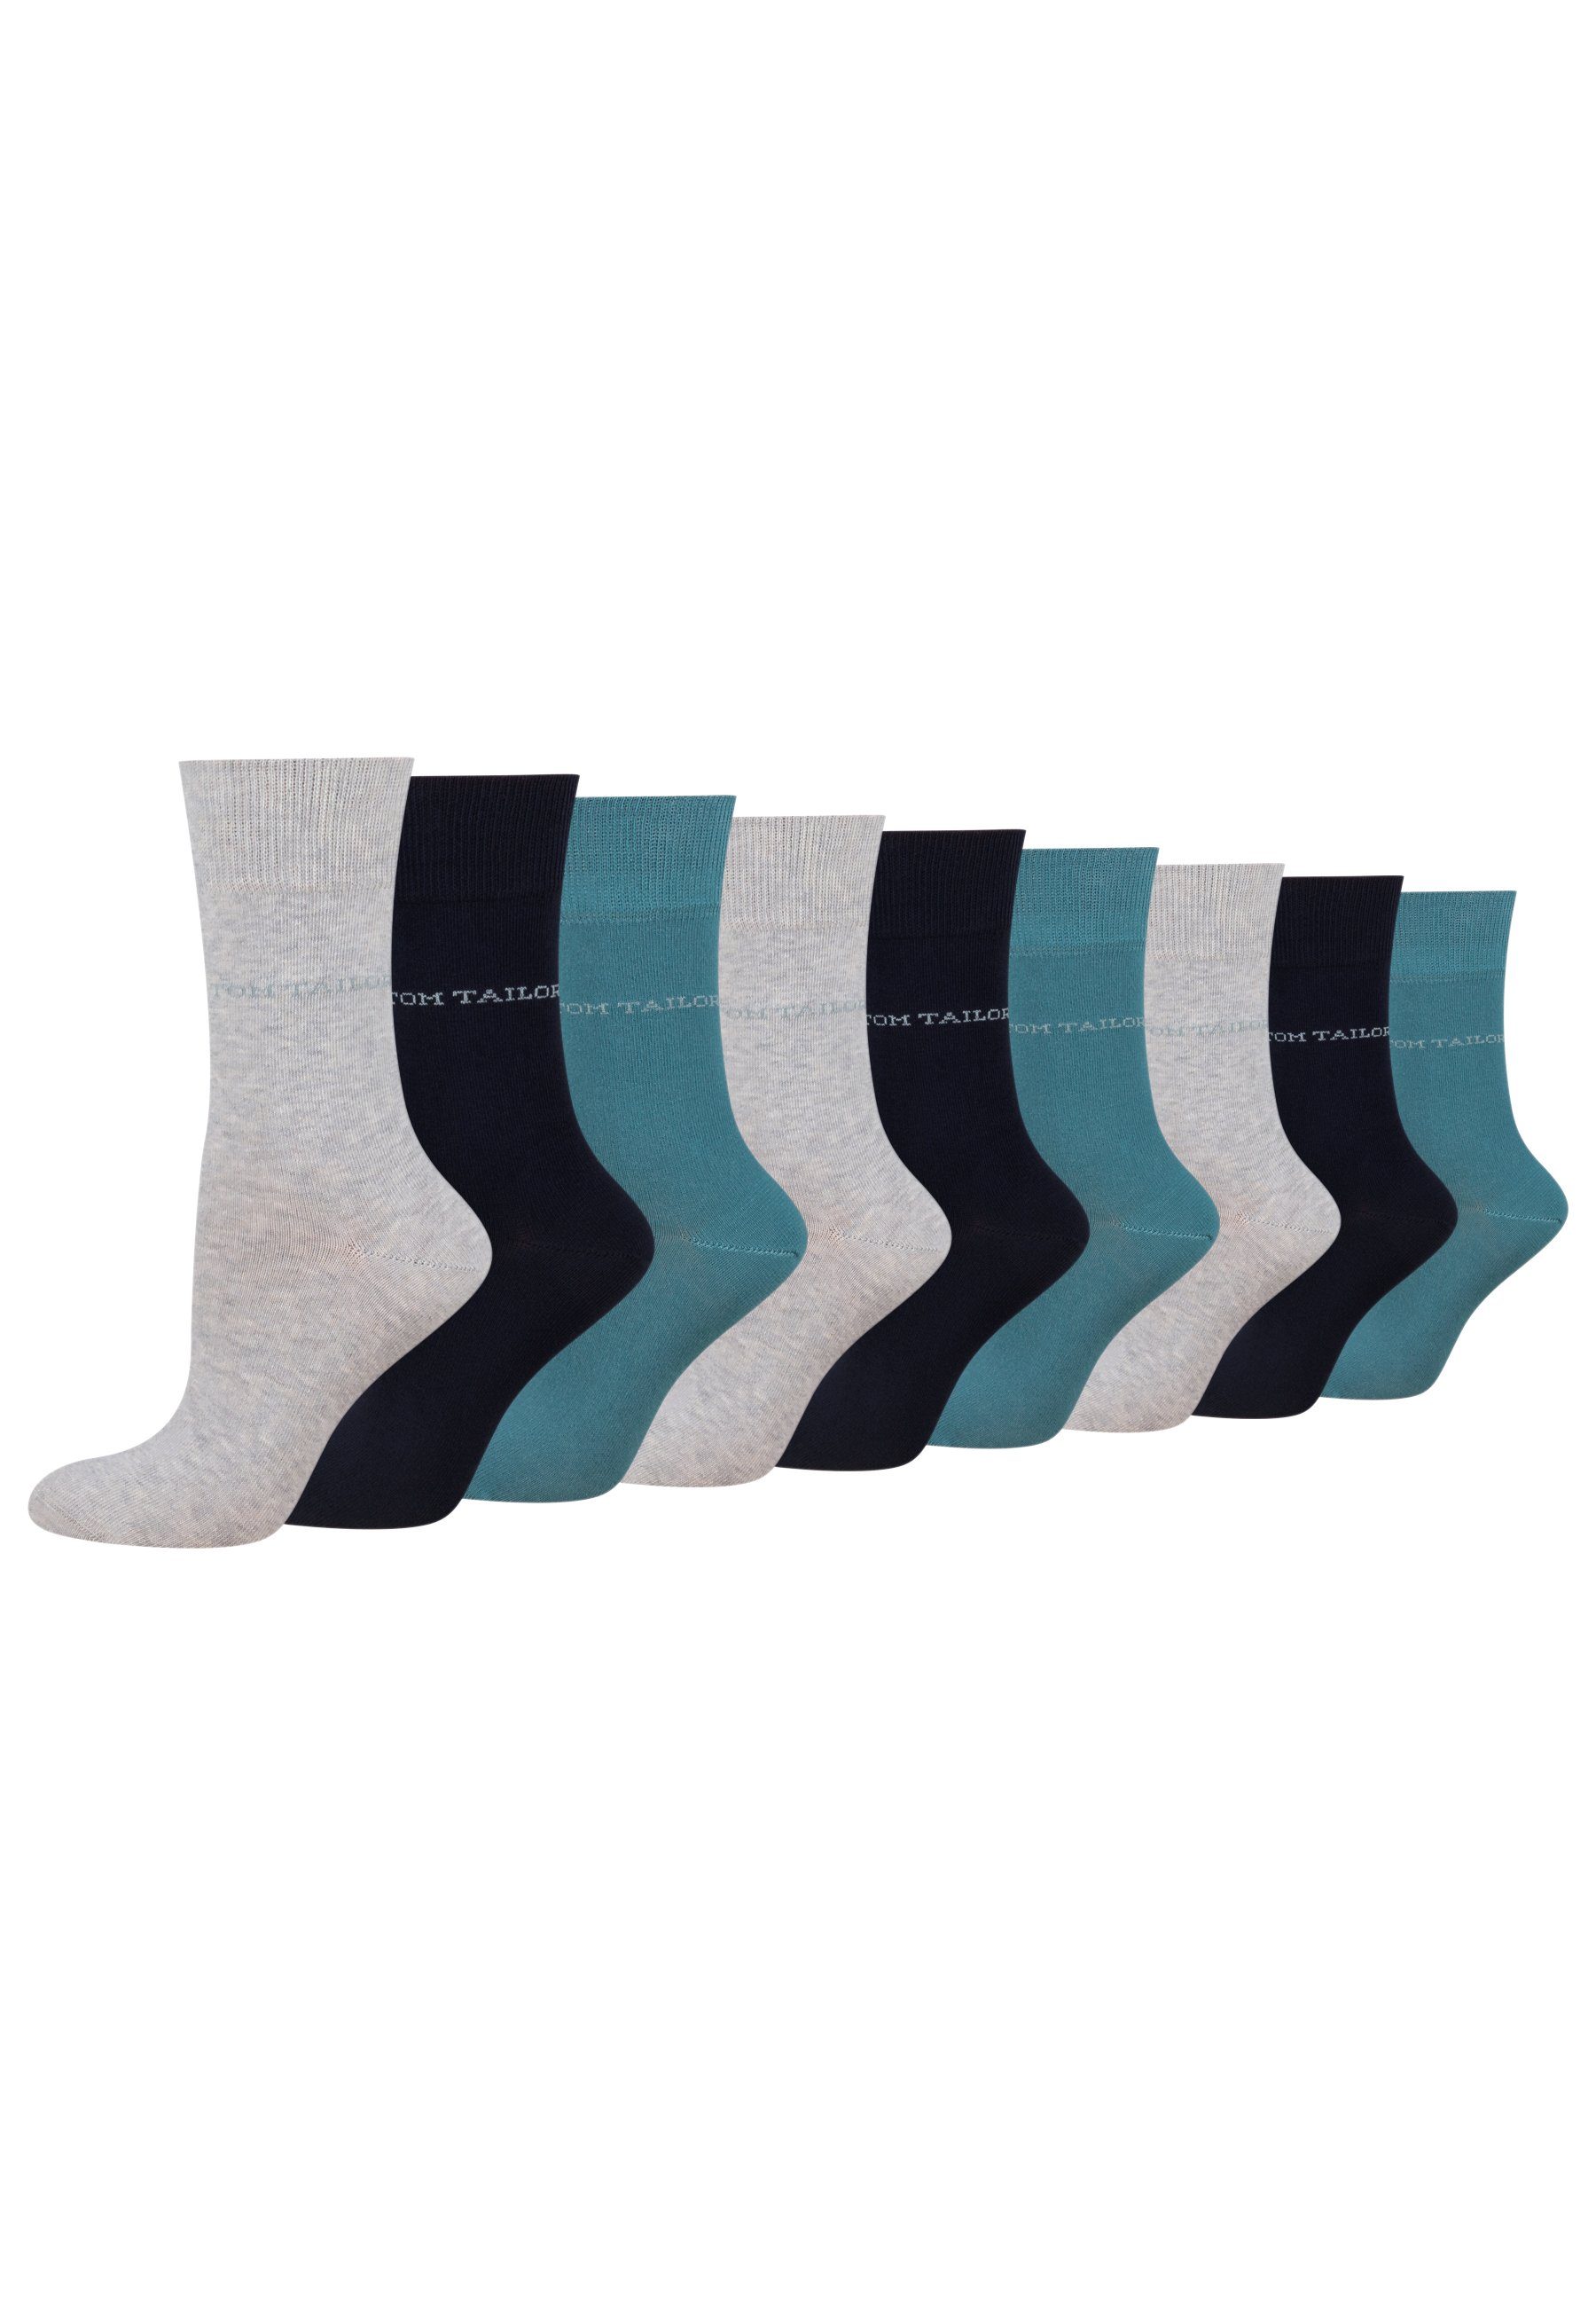 [Wird immer beliebter] TOM TAILOR Socken 9609820042_9 TOM Socken warmgrey Alltag Paar und TAILOR 9 Baumwollsocken – für Freizeit Damen